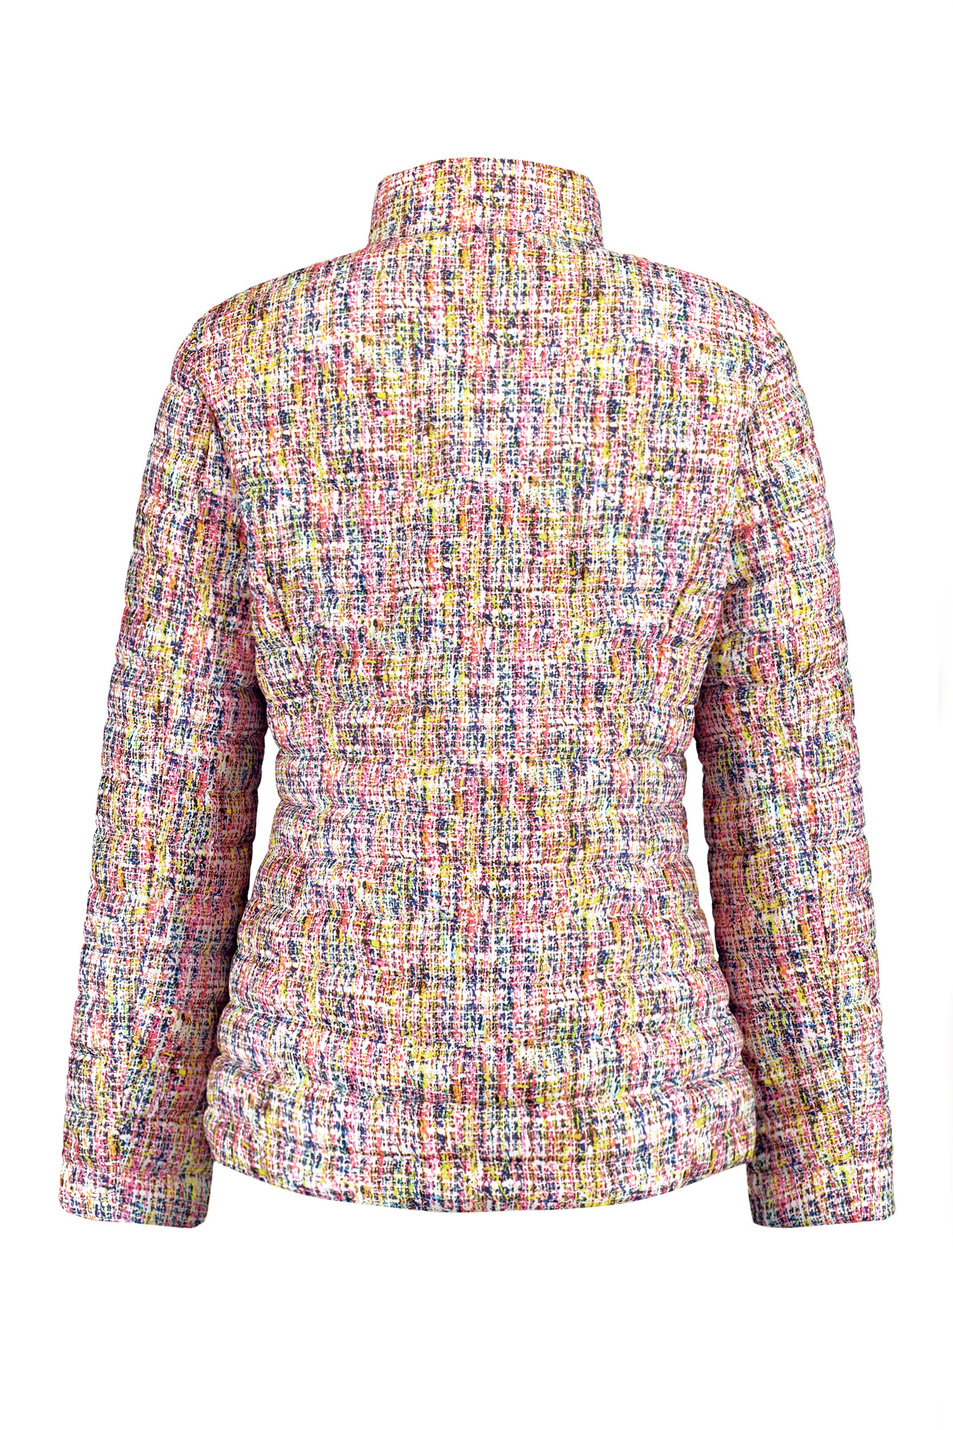 Gerry Weber Стеганая куртка с разноцветным узором (цвет ), артикул 550207-31012 | Фото 2